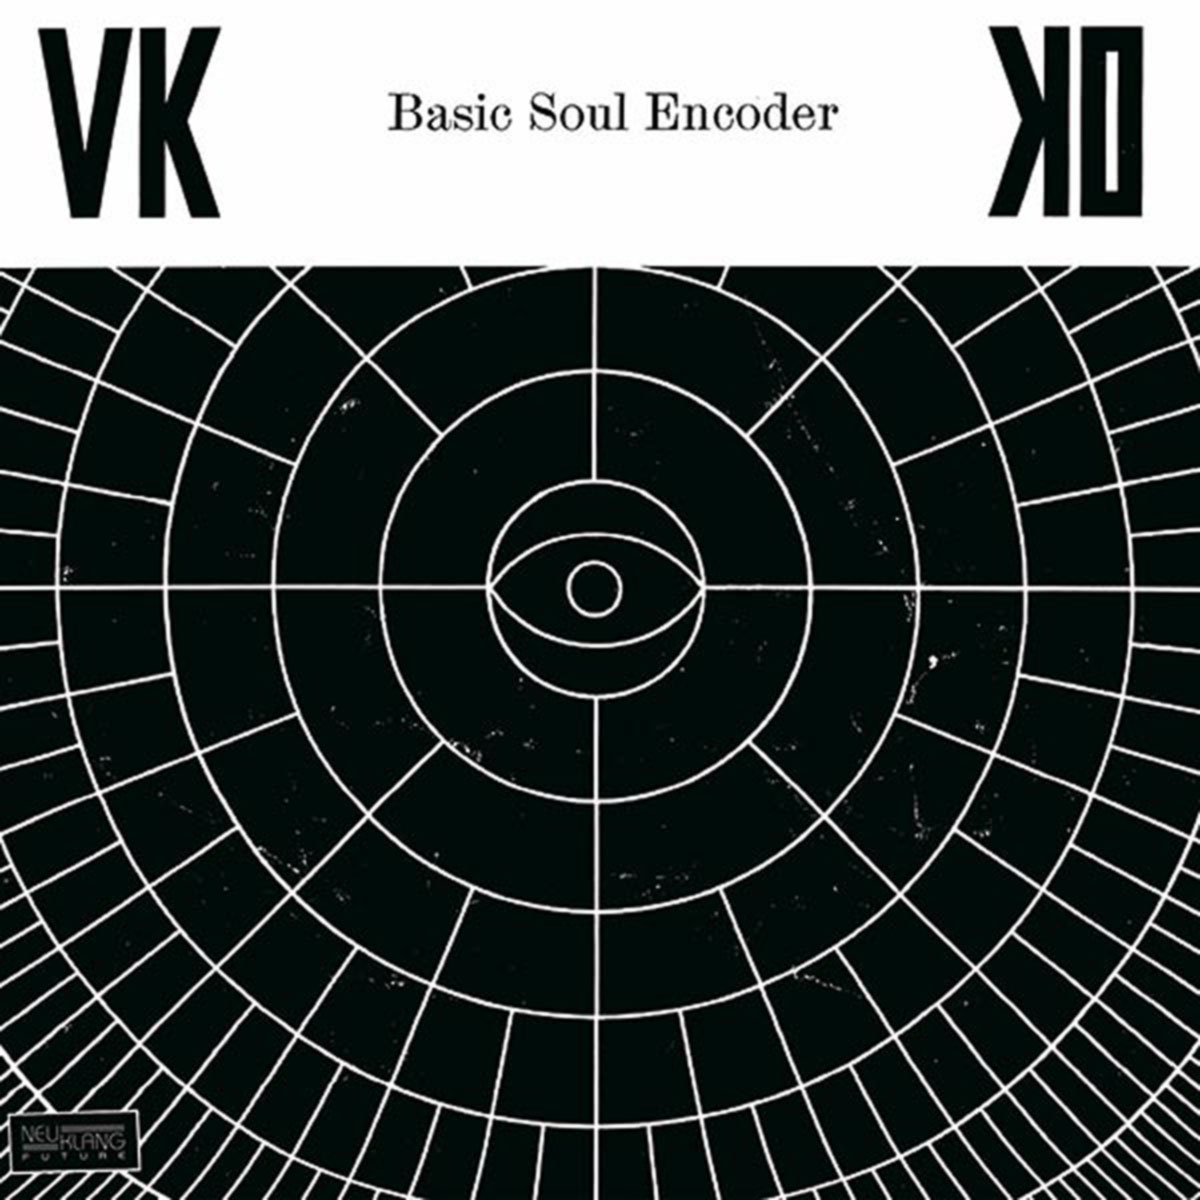 Basic Soul Encoder